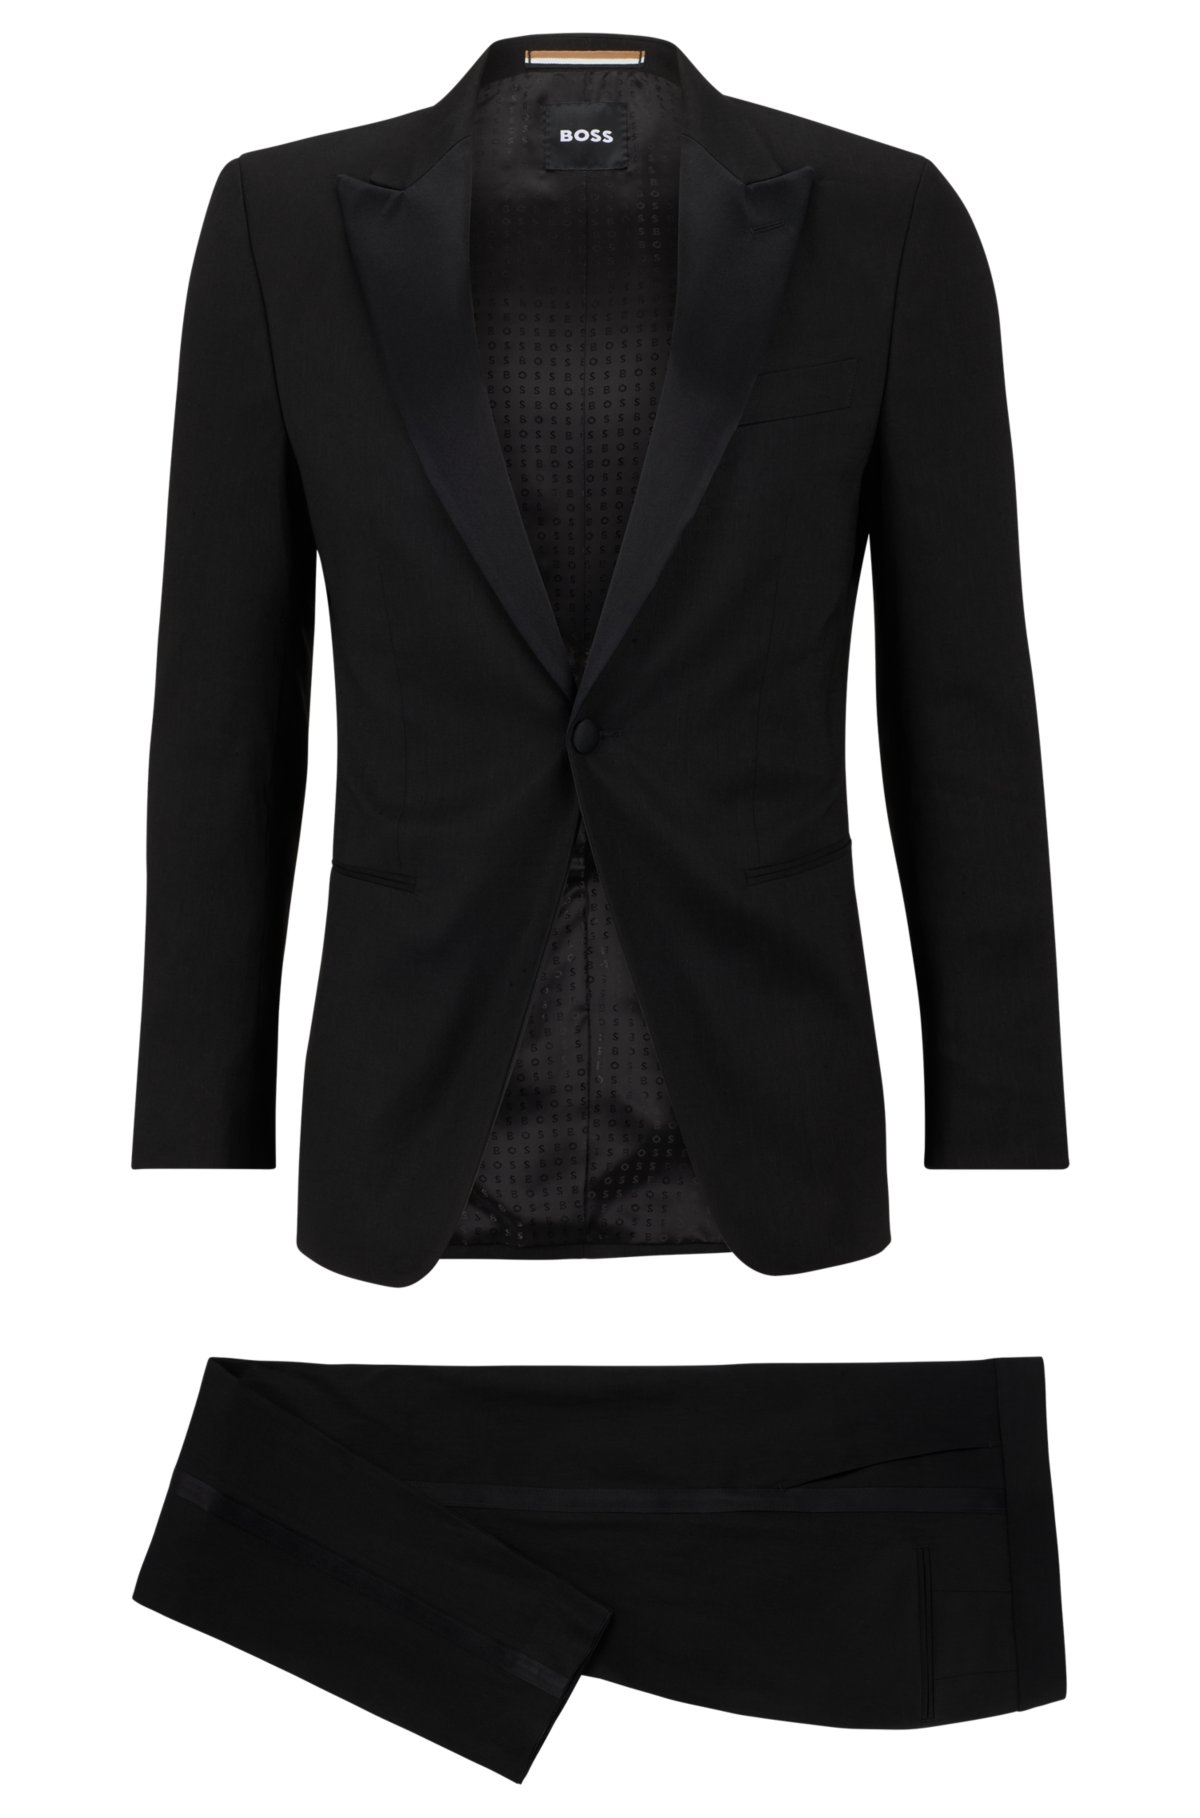 Slim-fit suit in a linen blend